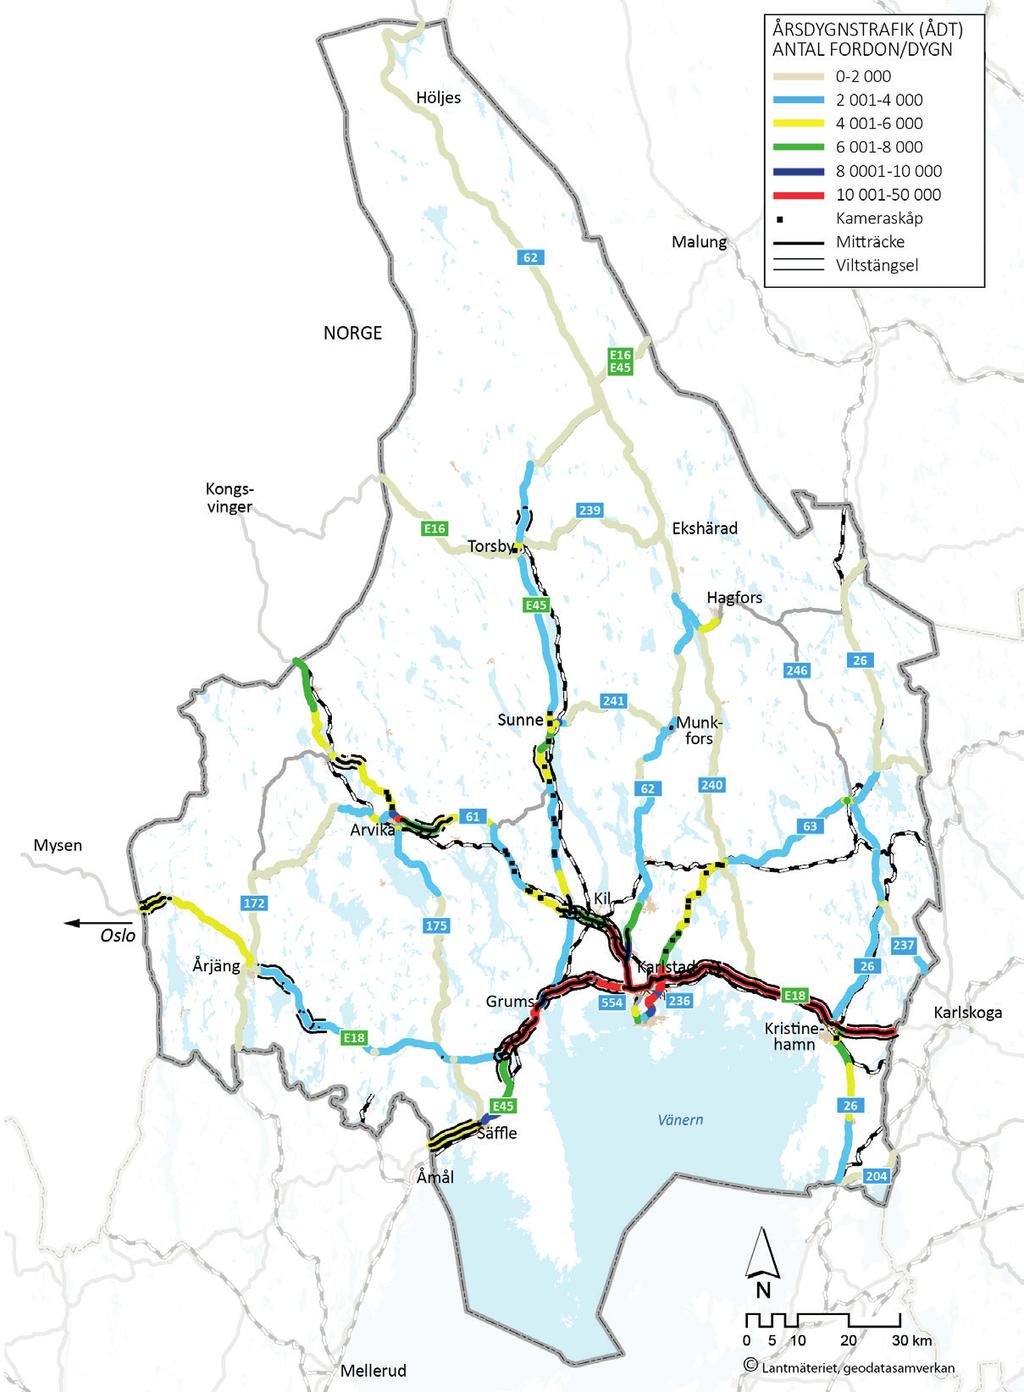 RESMÖNSTER OCH VÄNTADE BEHOV PÅ INFRASTRUKTUREN Regional systemanalys för Värmland 2017 beskriver resmönster och väntade behov på infrastrukturen i Värmland.